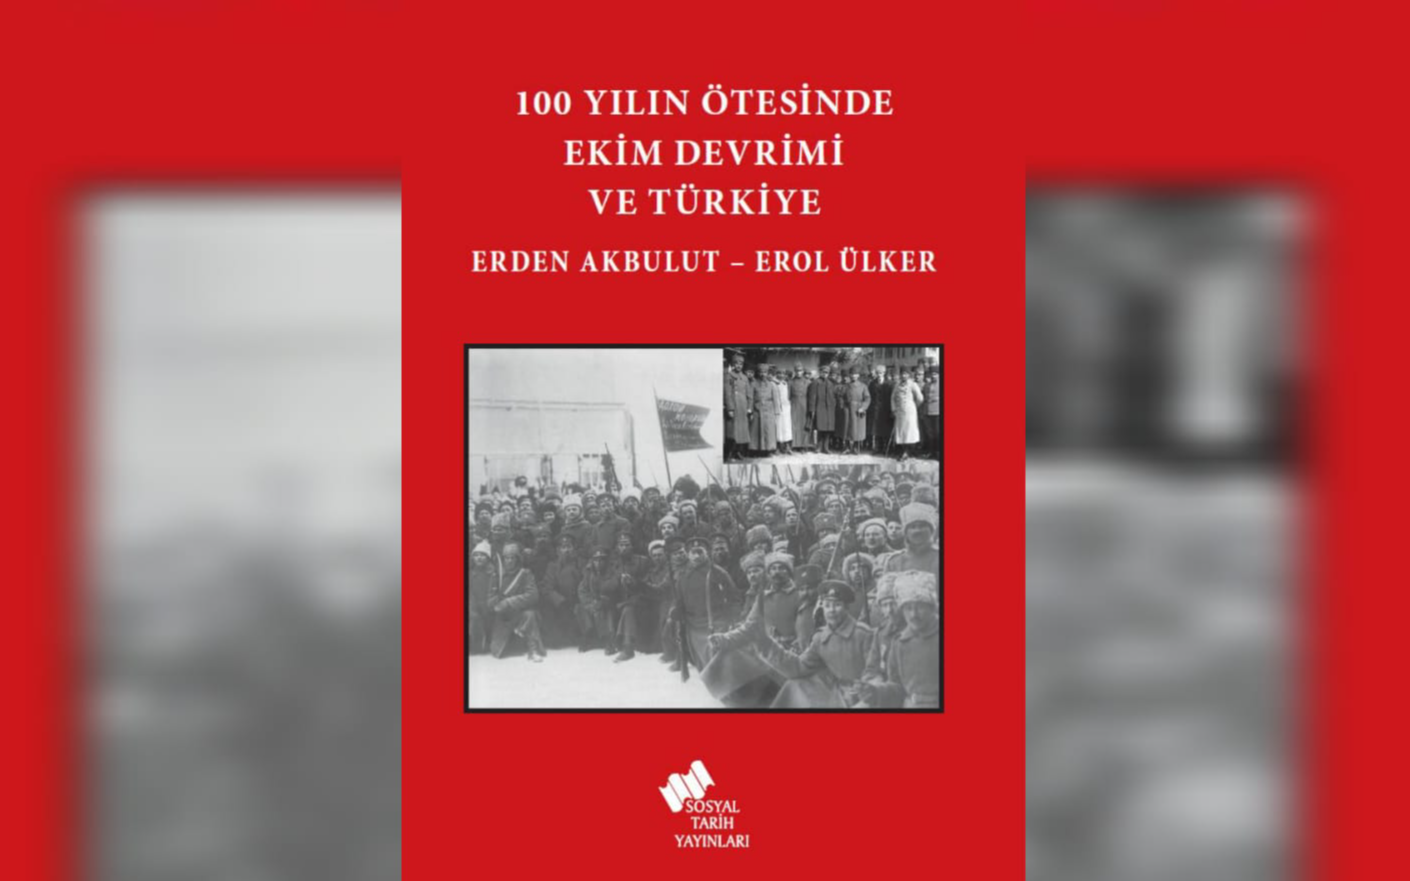 Ekim Devrimi'nin Türkiye'ye etkileri